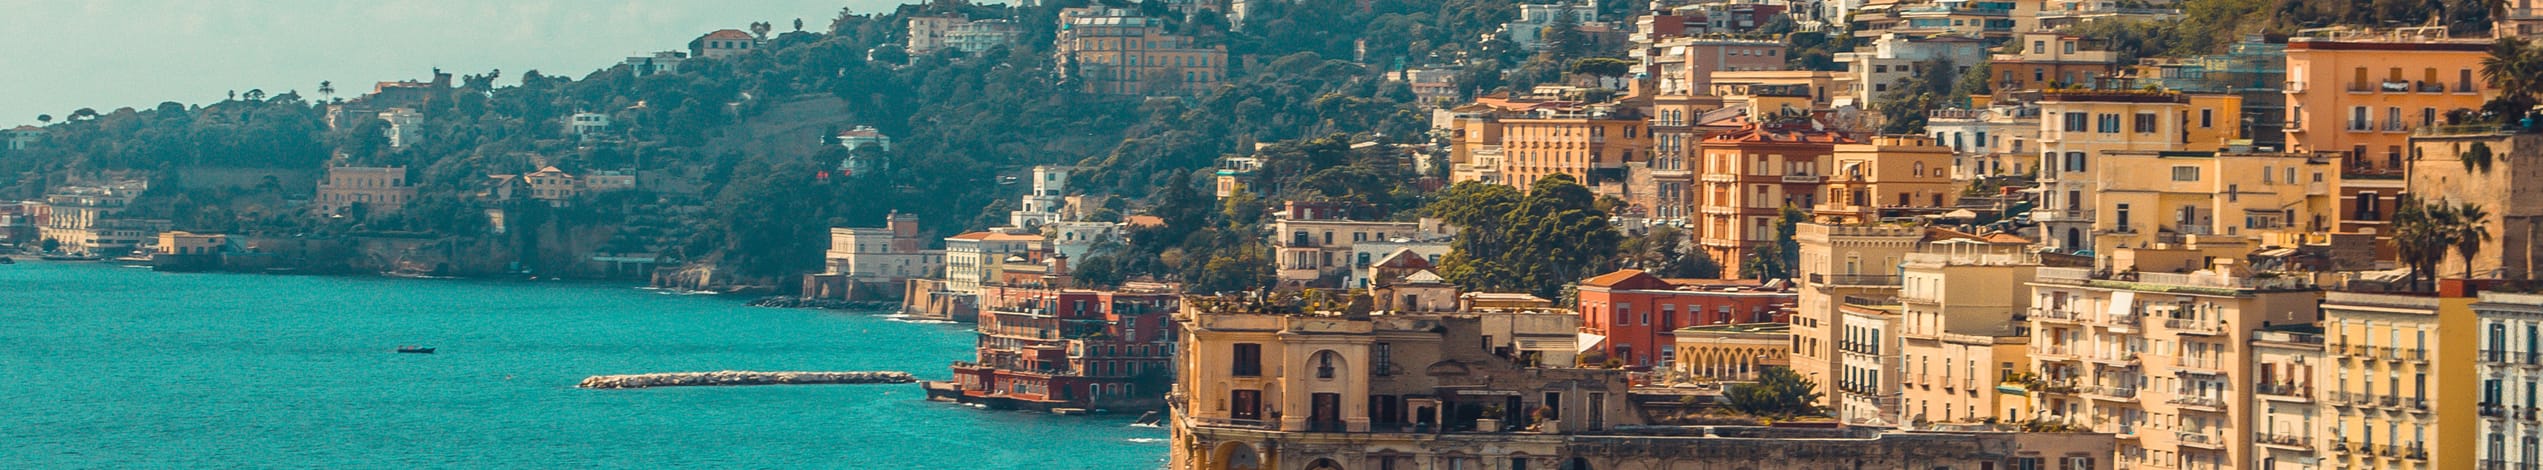 Studieresa till Italien - Neapel